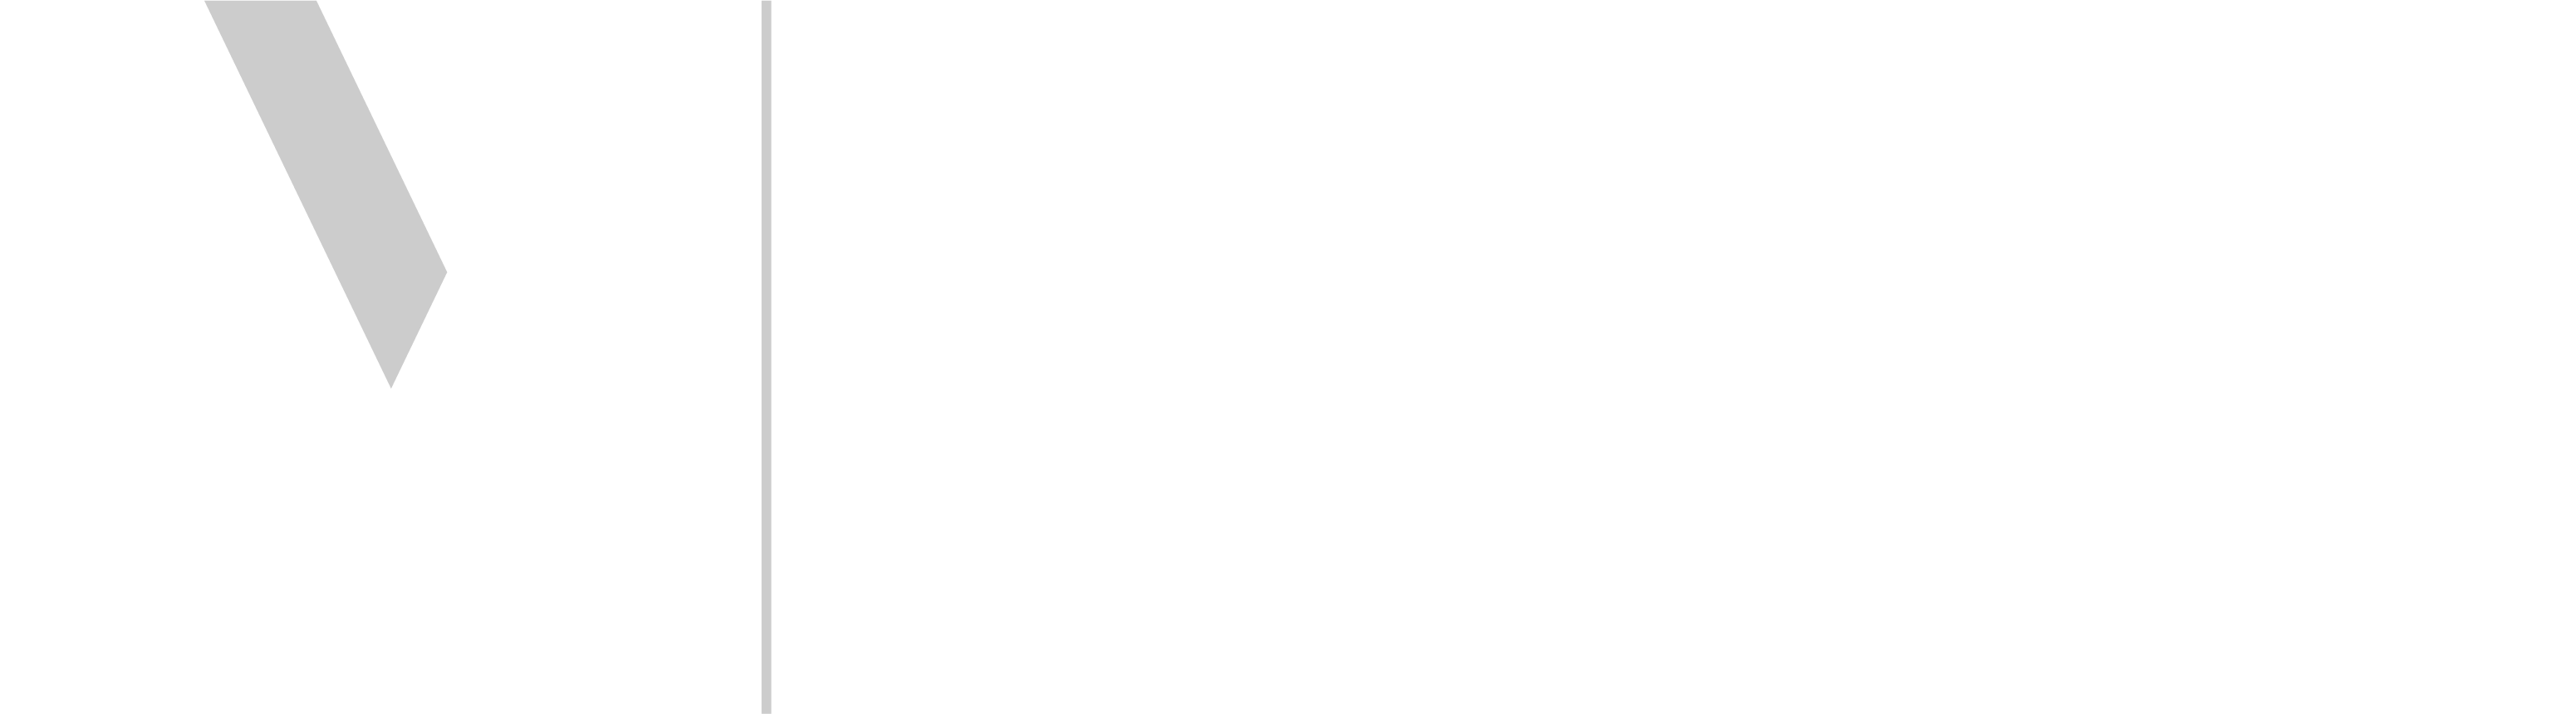 Online Veteran Logo weiss